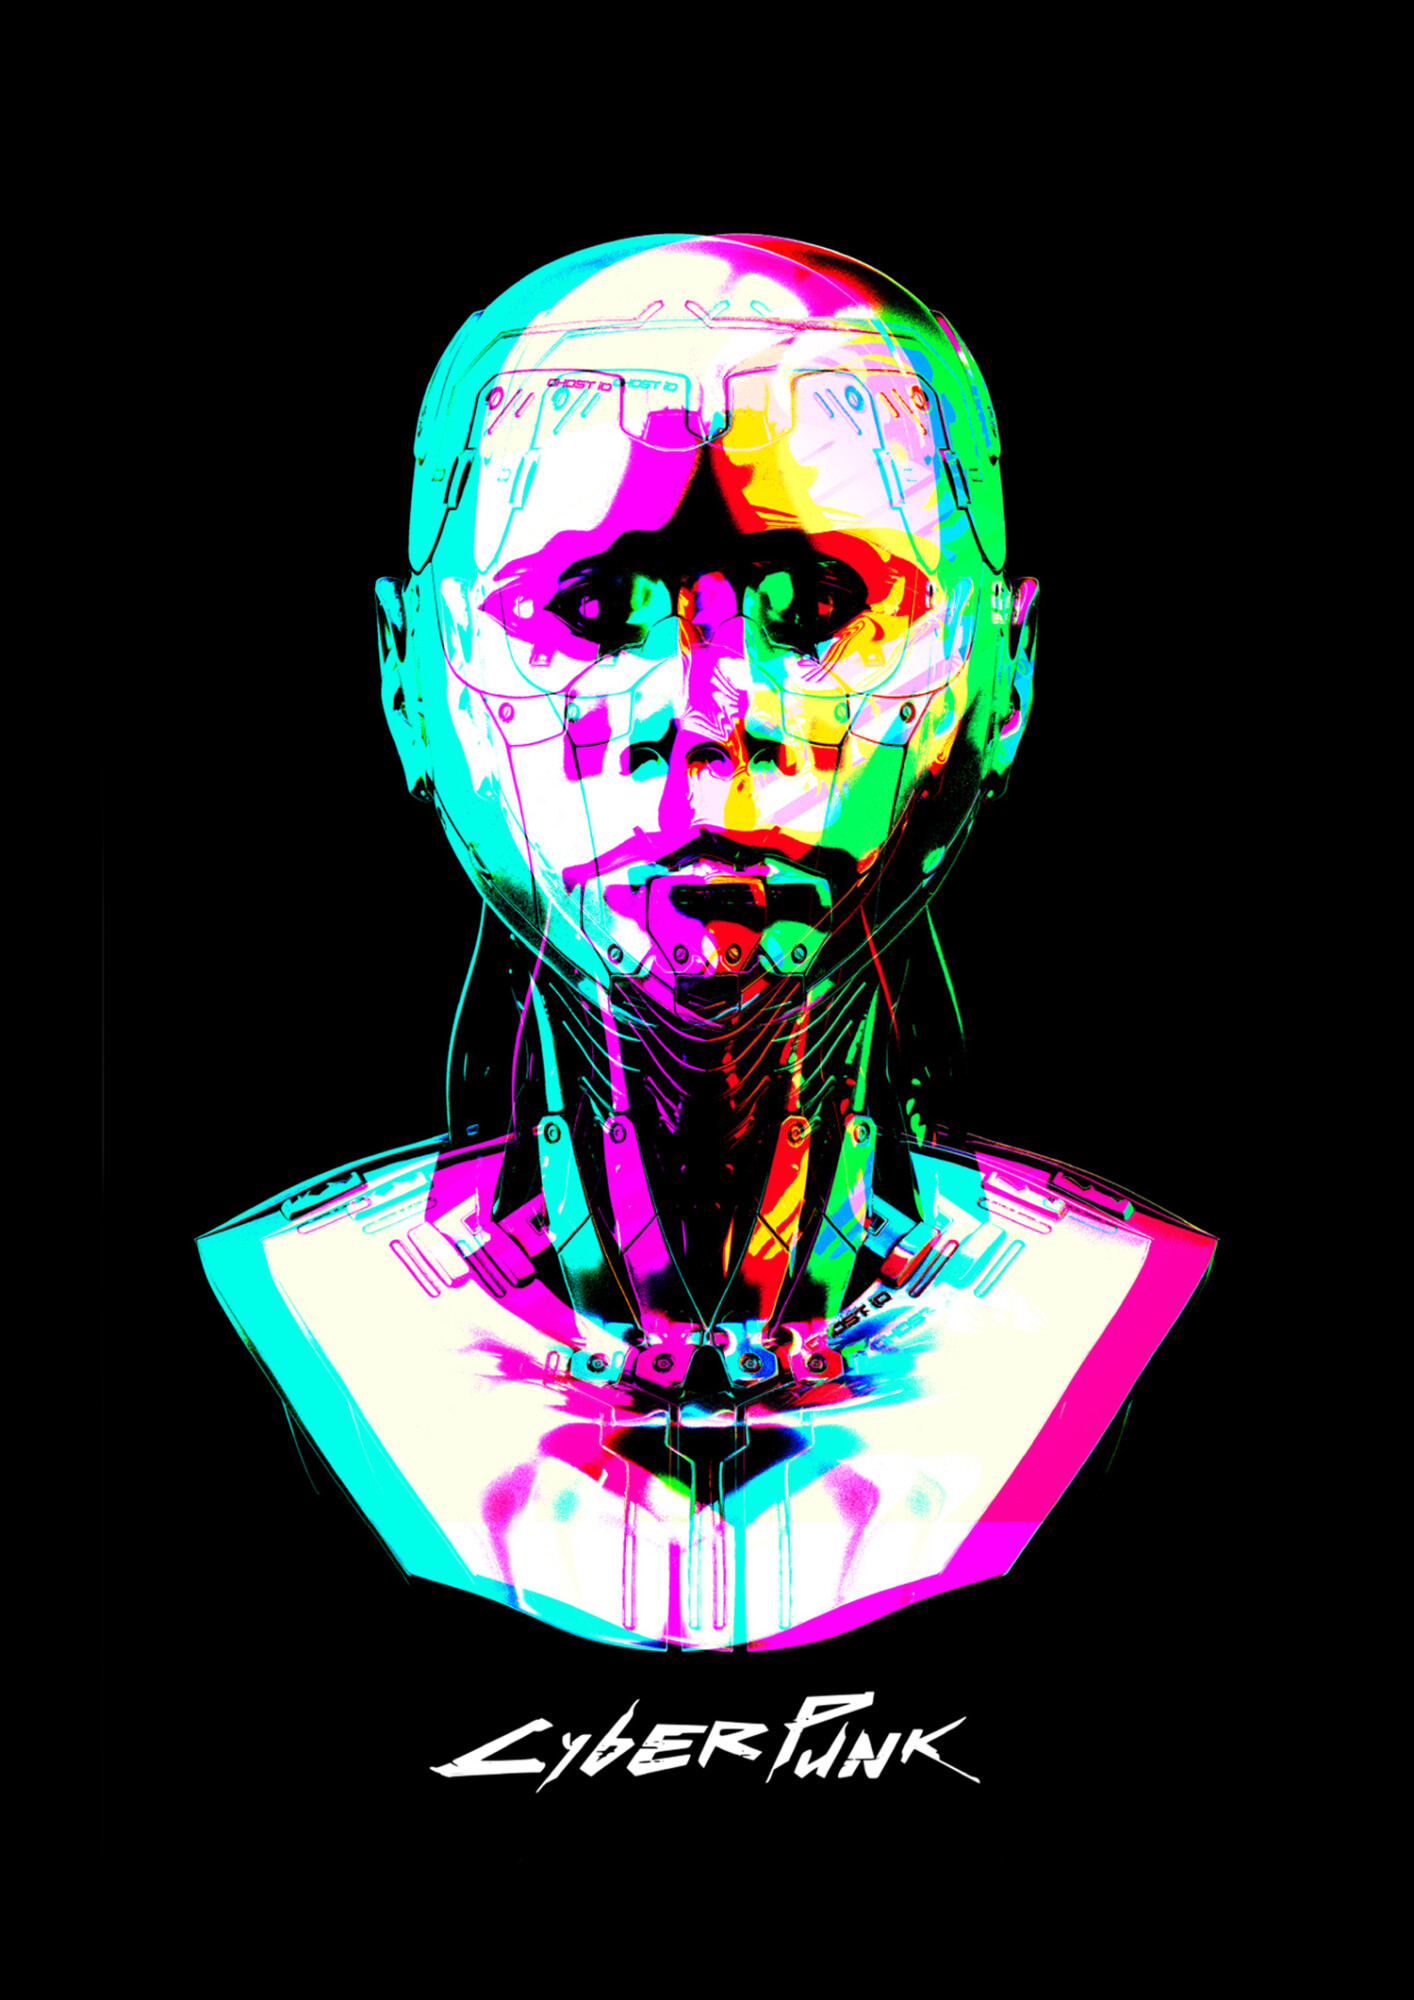 Cyberpunk – Alternative Poster Art